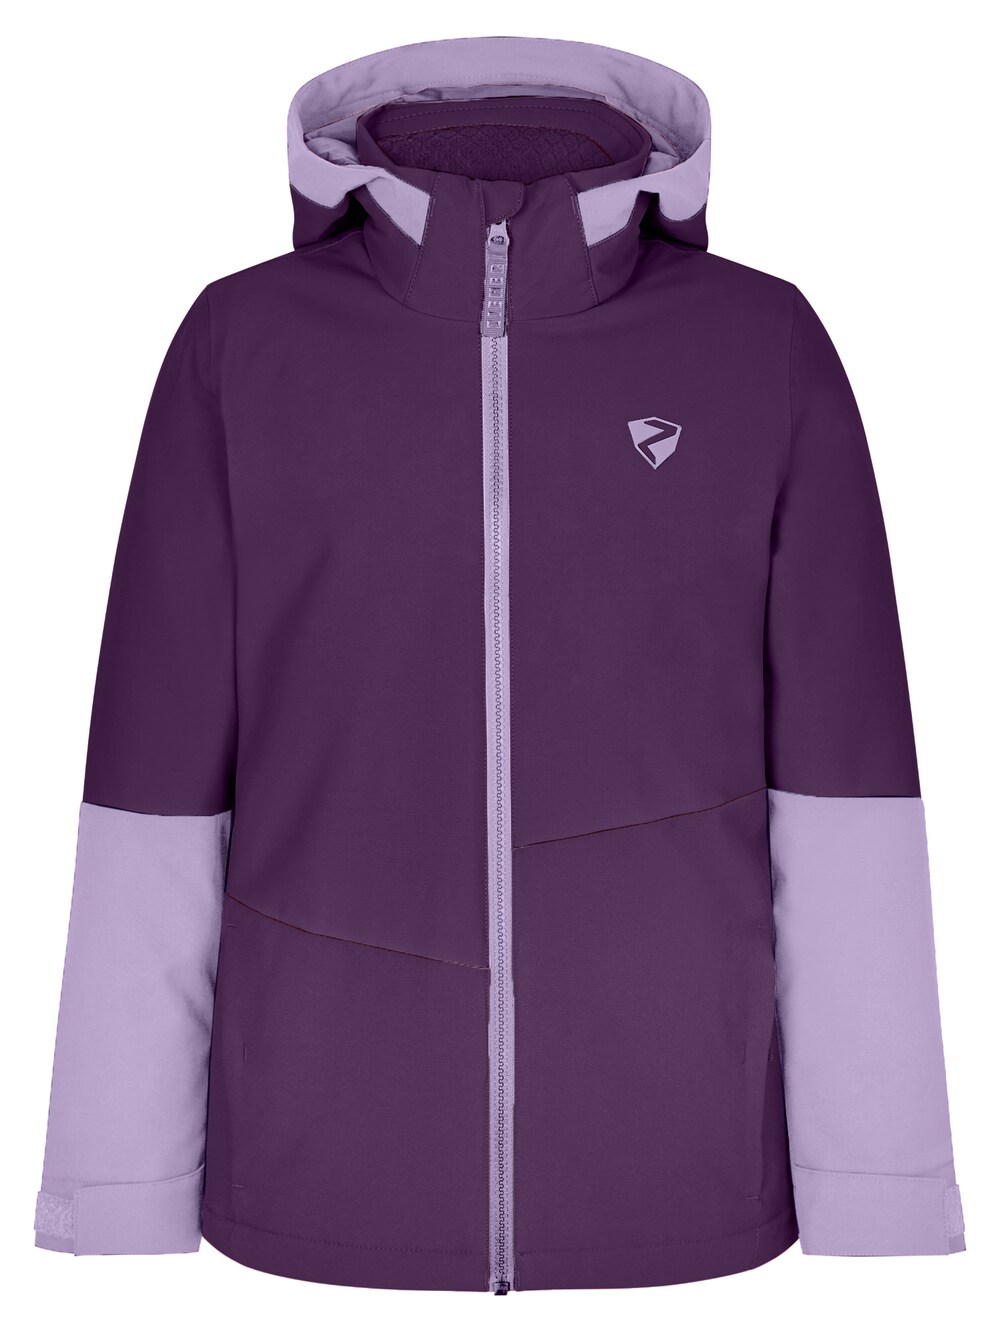 Спортивная куртка Ziener AVAK, фиолетовый спортивная куртка ziener avak фиолетовый